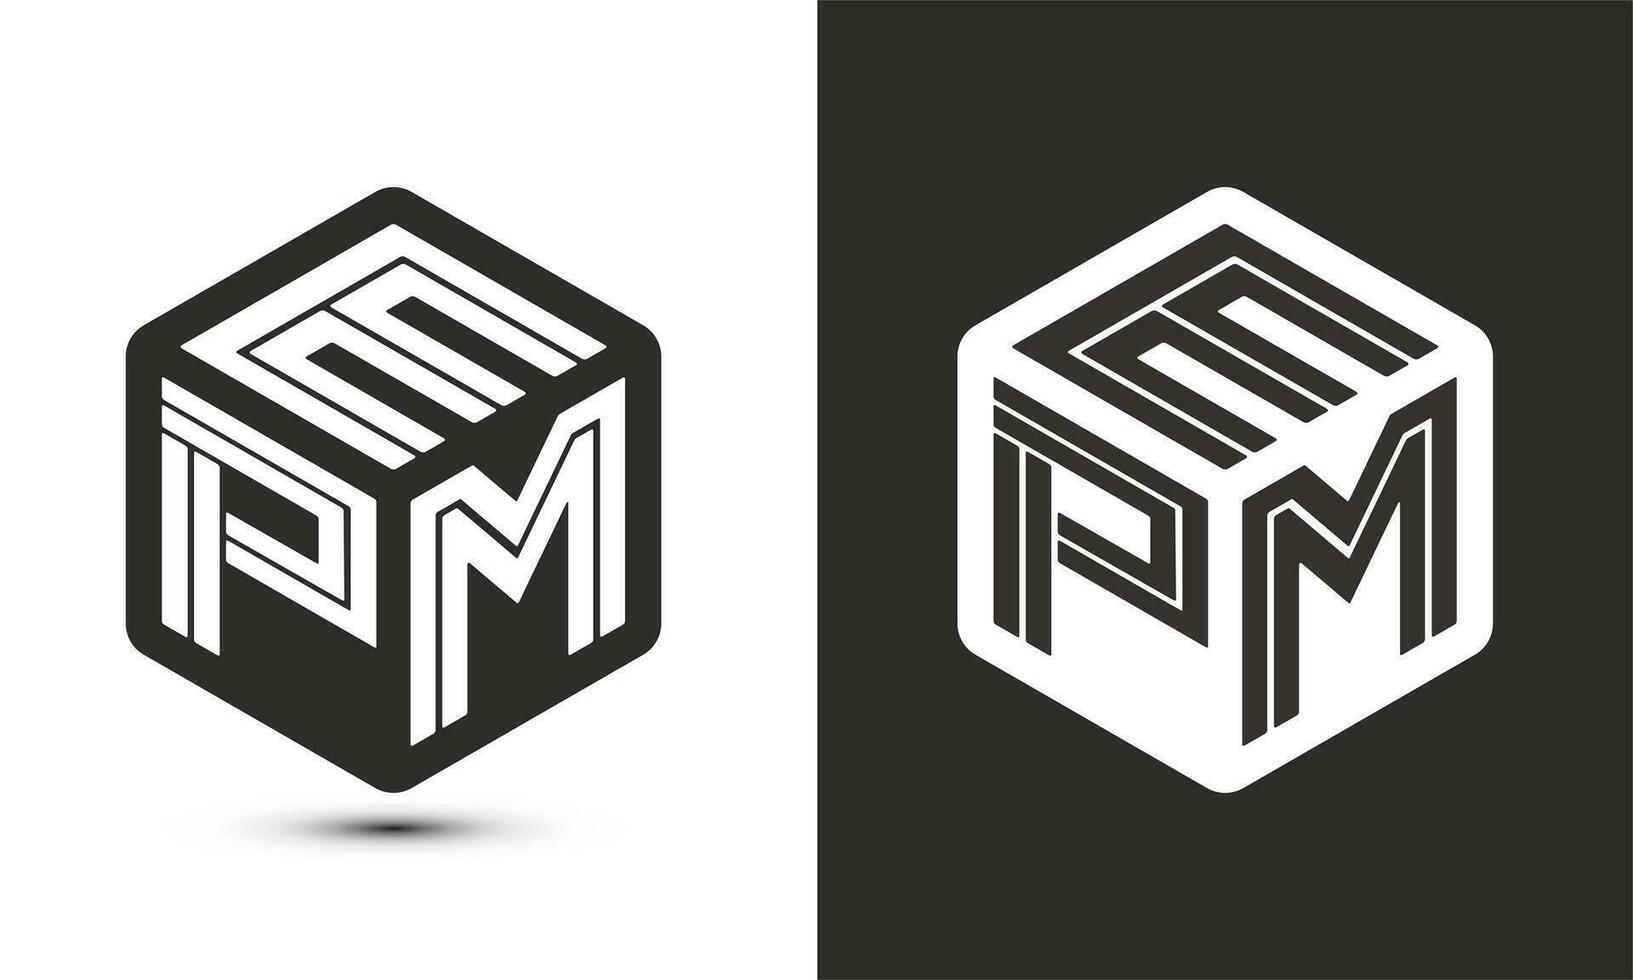 EPM letter logo design with illustrator cube logo, vector logo modern alphabet font overlap style.